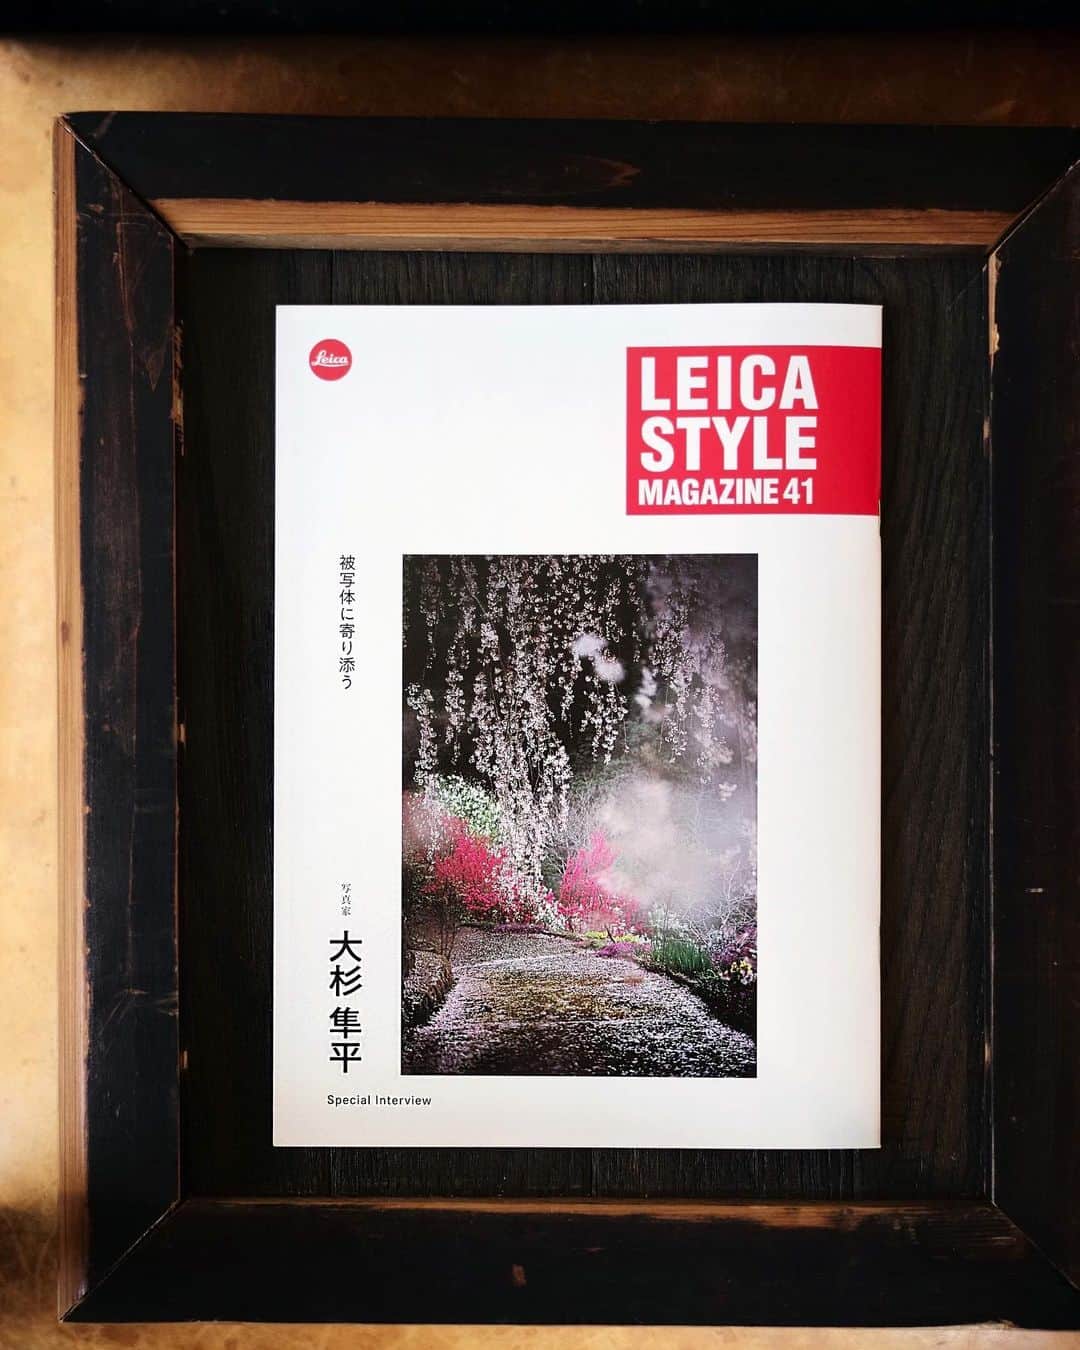 大杉隼平のインスタグラム：「LEICAのPR誌「ライカスタイルマガジン」で表紙、特集を組んで頂きました。 @leica_camera_japan   表紙に書いて頂いた「写真家大杉隼平 -被写体に寄り添う-」  寄り添うことができるのか。そこにある背景、積み重ねた時間。大切なことを学び、伝えたい気持ち。  写真家としてなにができるか。深く考える機会を頂きました。  #leica #leicastylemagazine #ライカ #ライカスタイルマガジン #leicaphoto #leicaphotography #leicam #noctilux #写真 #写真家 #photo #photographer #shumpeiohsugi #shumpeiohsugi_photographer #大杉隼平」